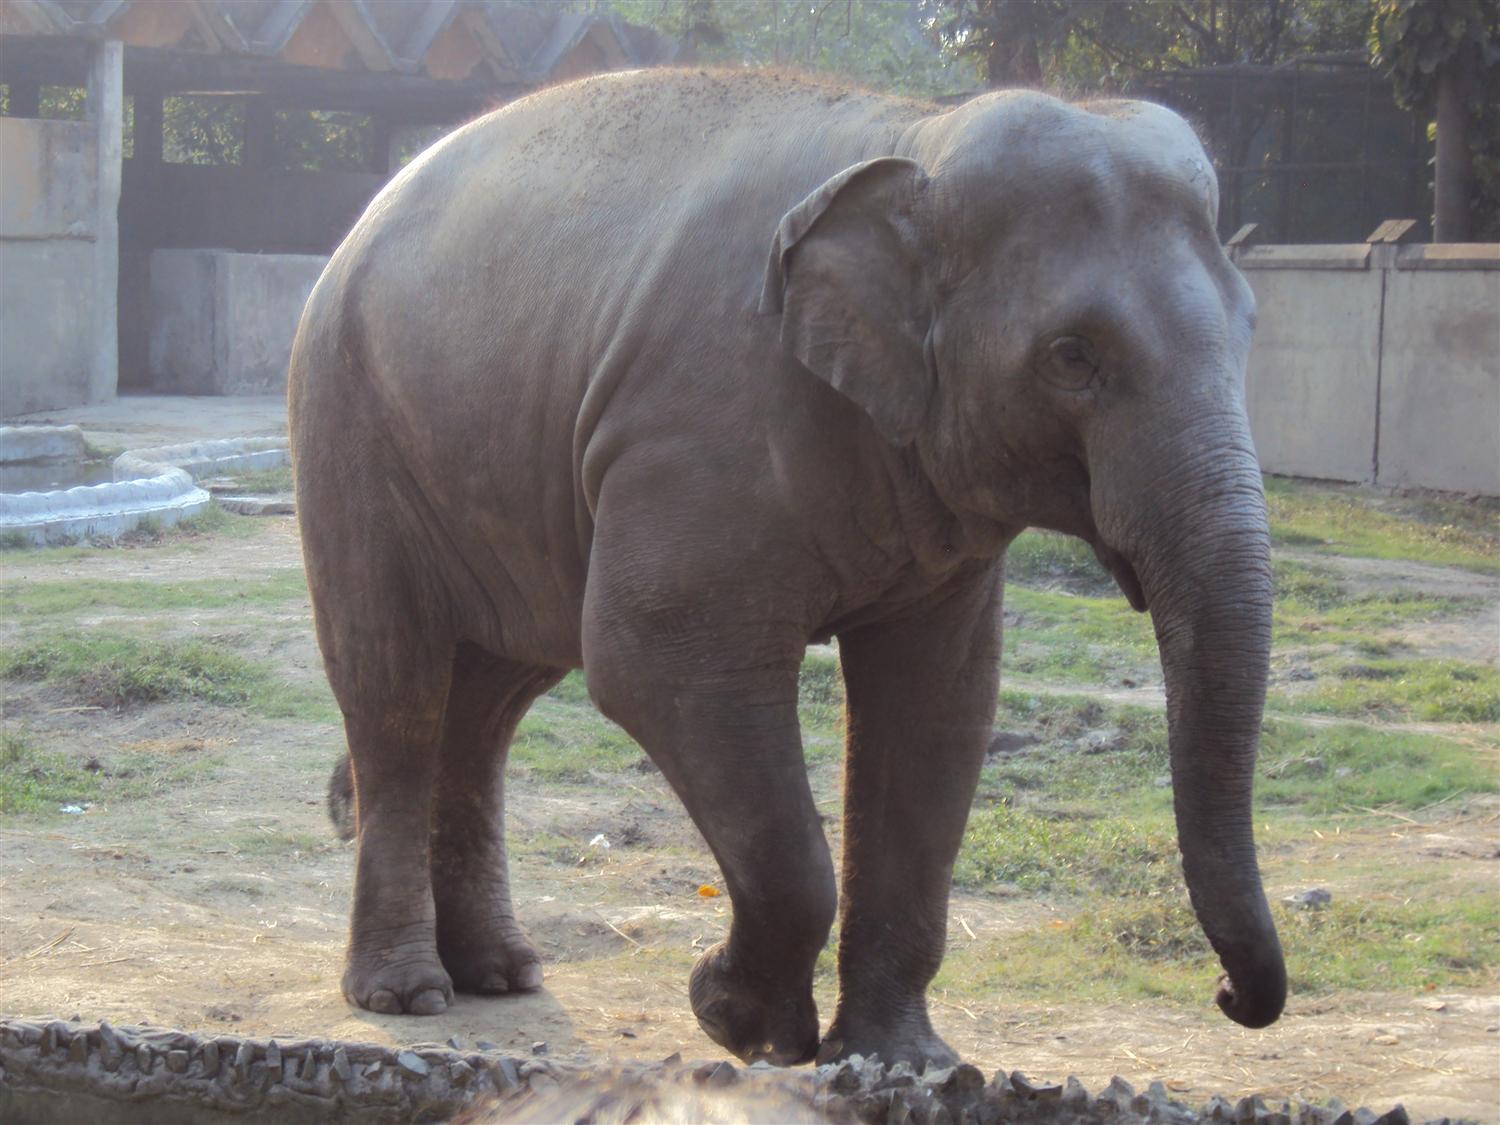 Elephant at alipur zoo photo